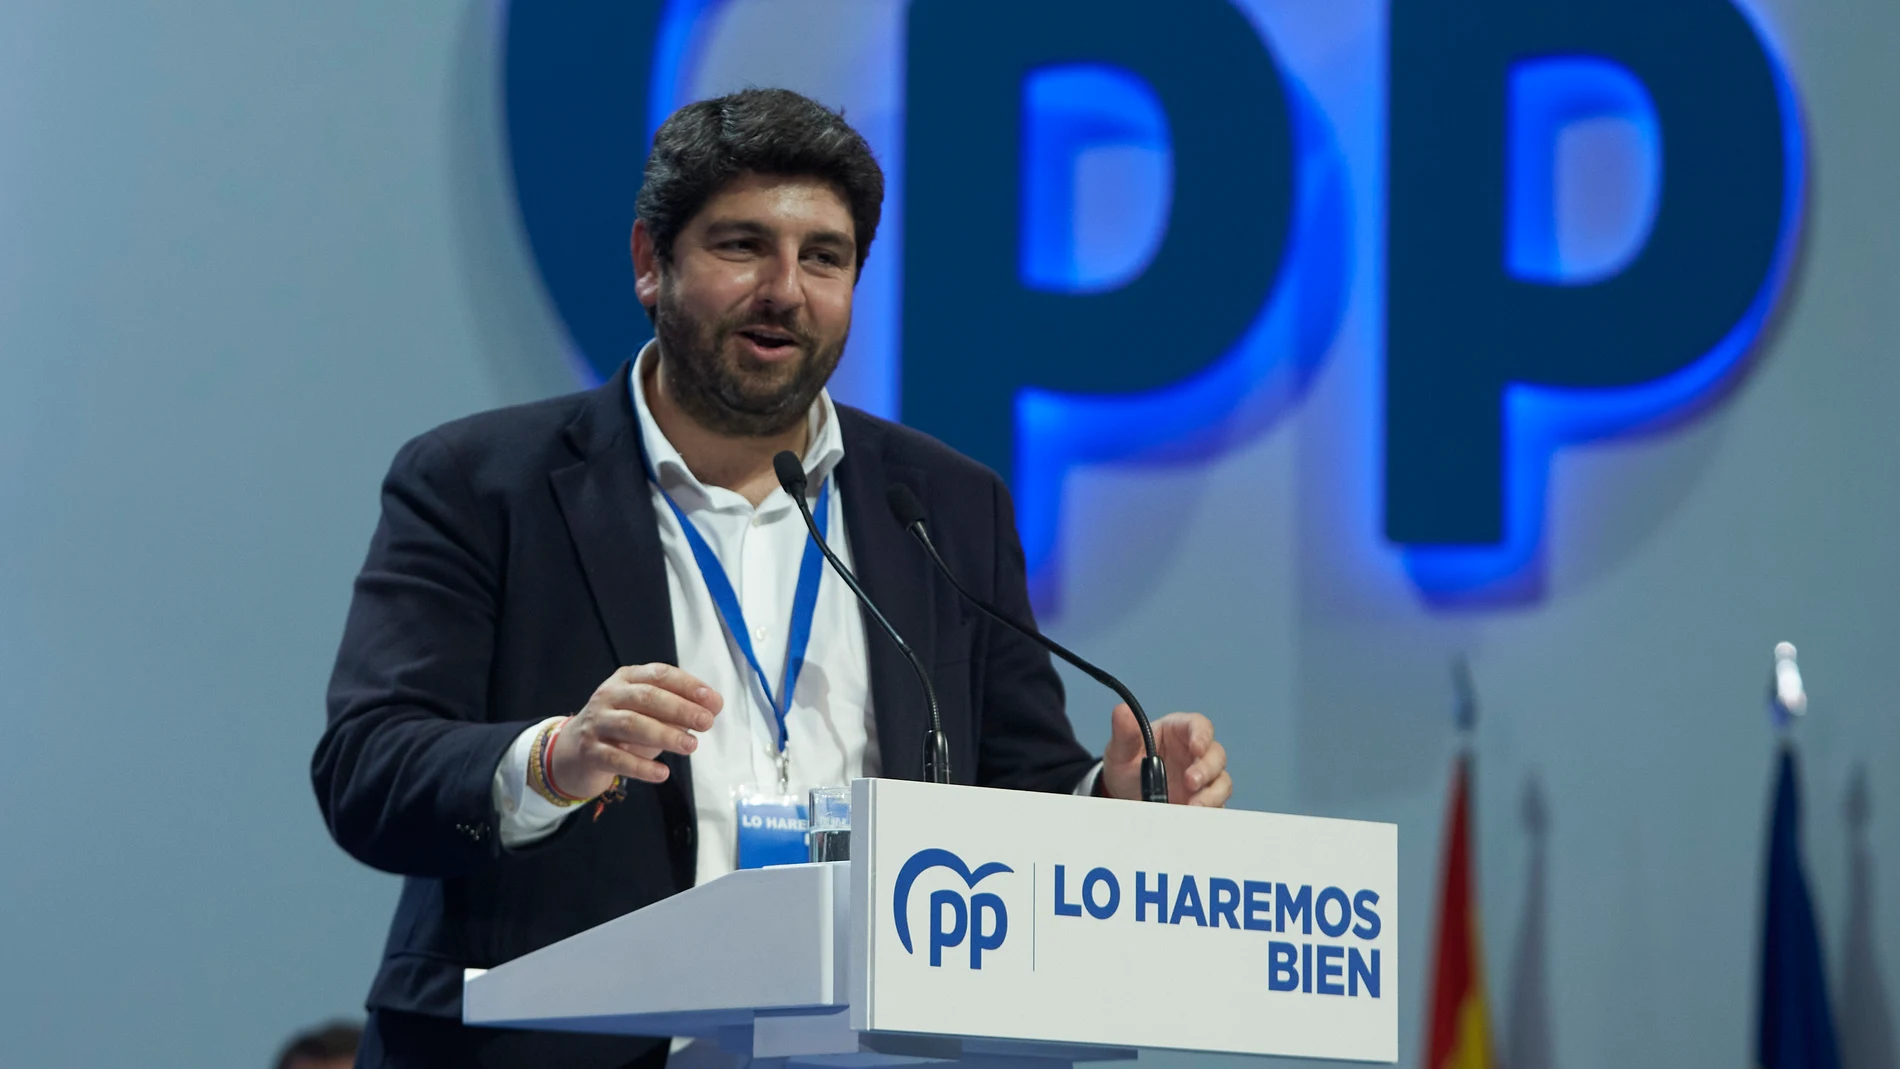 El presidente de Murcia, Fernando López Miras, en el Palacio de Congresos y Exposiciones de Sevilla (FIBES) para participar en el XX Congreso extraordinario del PP